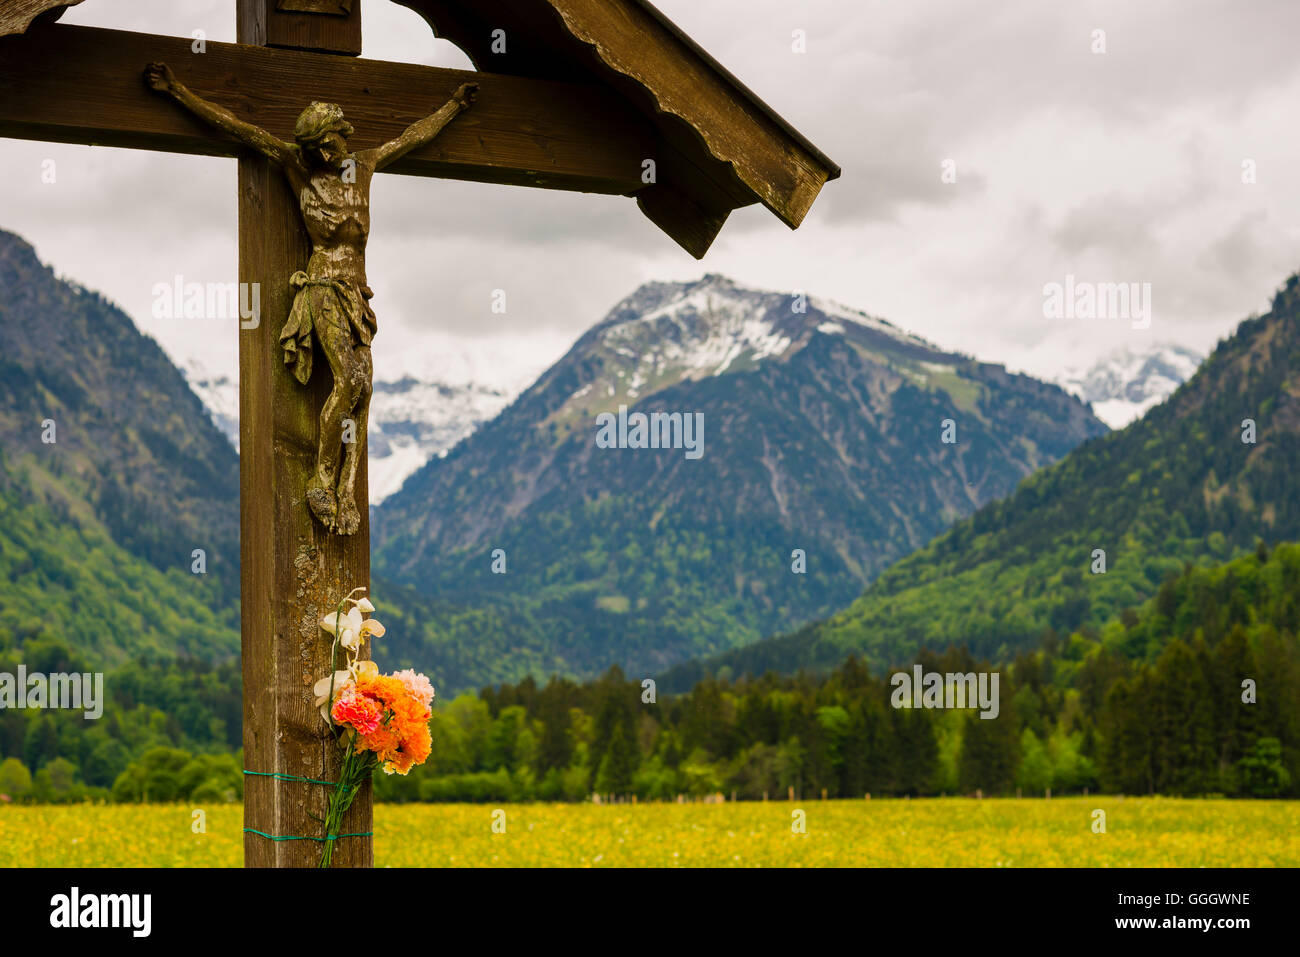 Géographie / voyage, Allemagne, Bavière, calvaire avec la statue du Christ, Loretto Meadows à Oberstdorf Allgaeu, Alpes, Allgaeu, Freedom-Of-Panorama Banque D'Images